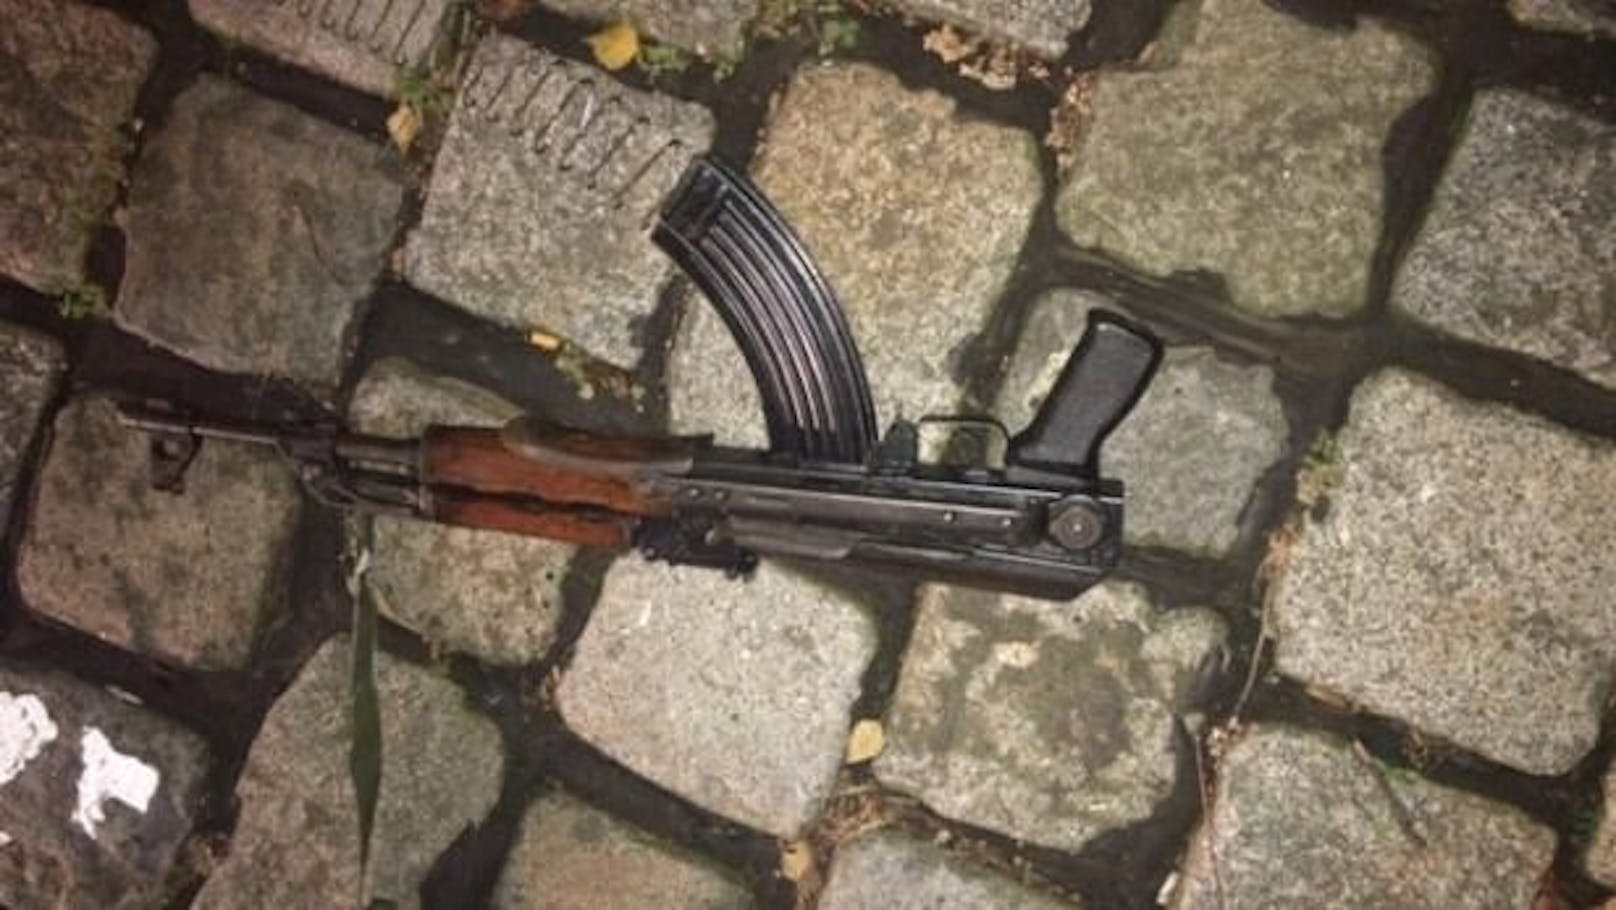 Gewehr und Pistole des Wien-Terroristen kamen aus Osteuropa.